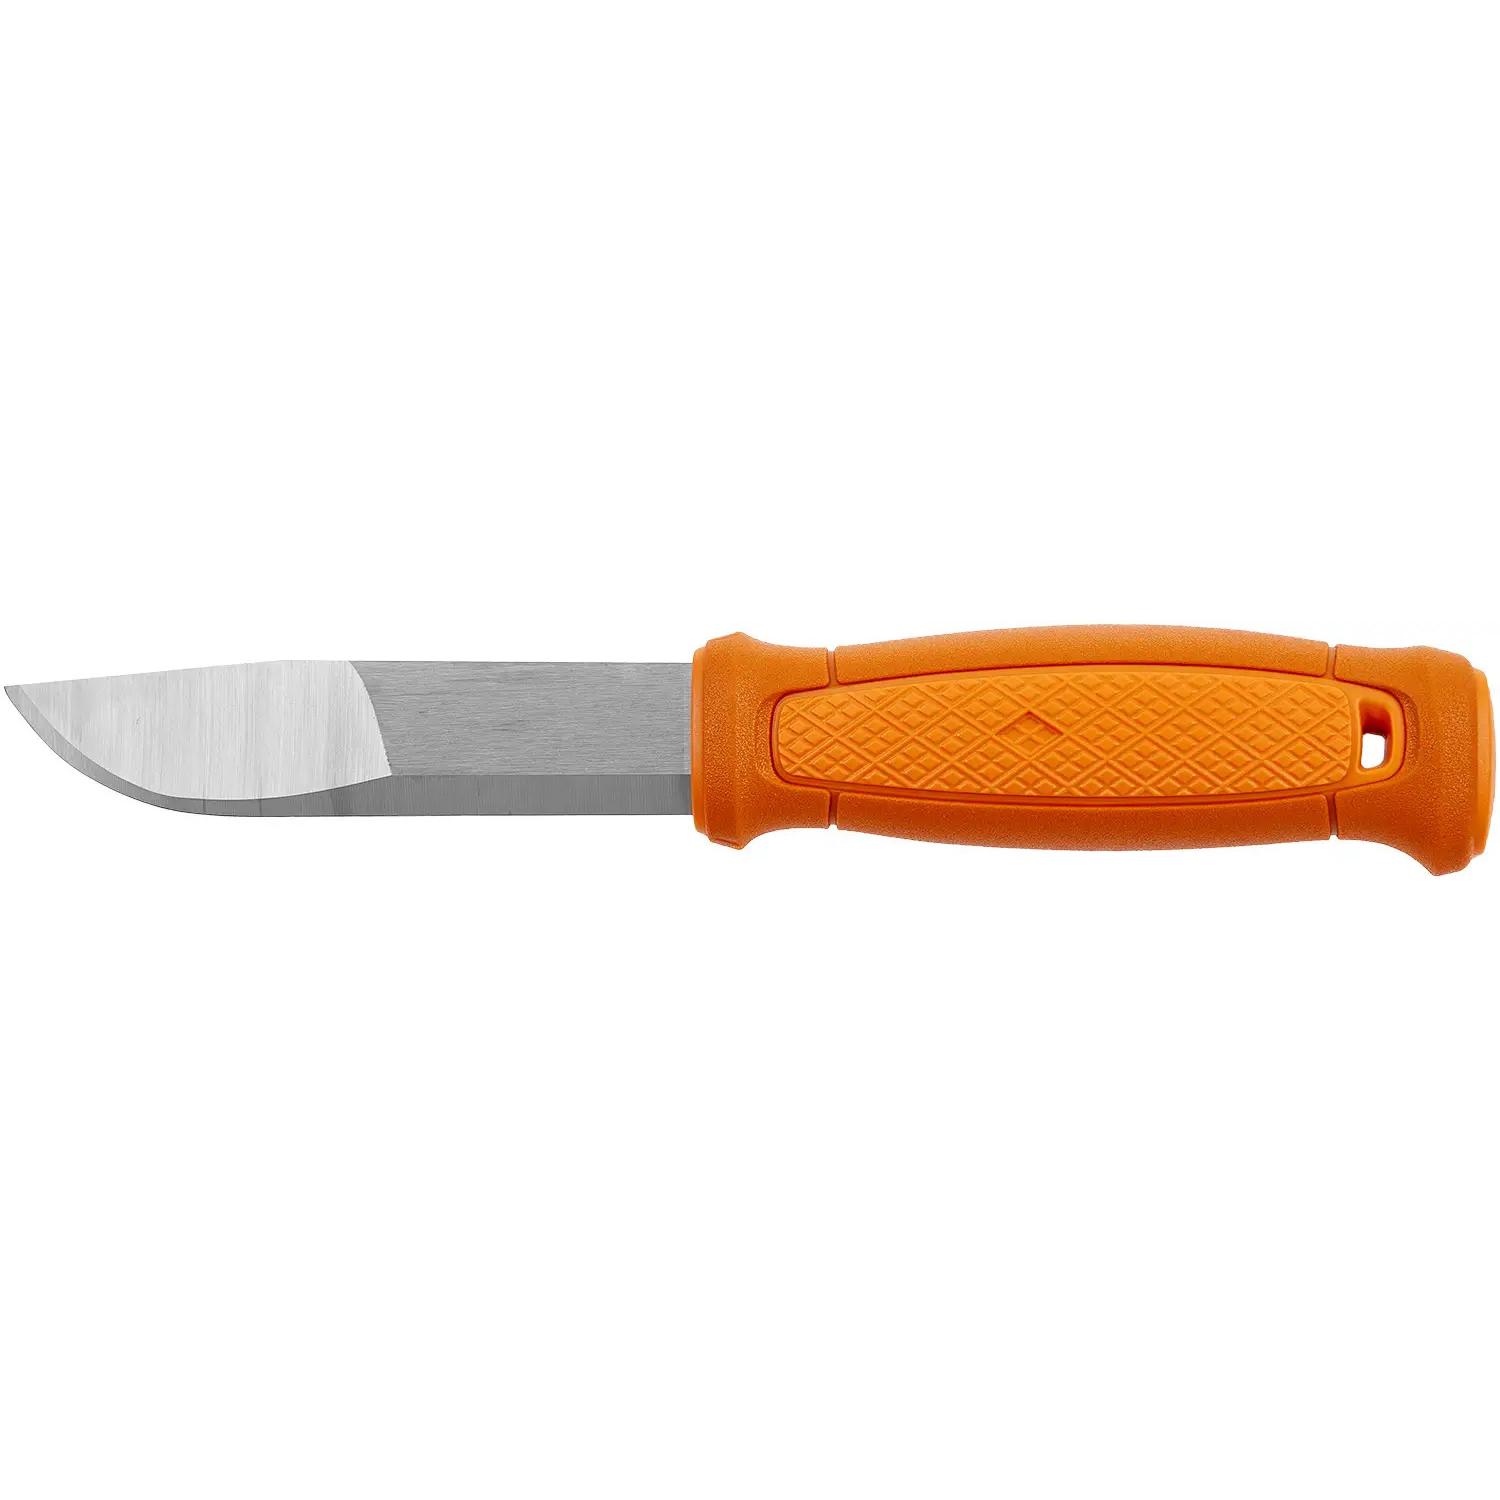 Нож Morakniv Kansbol Survival Kit. Orange 13913 2305.02.31